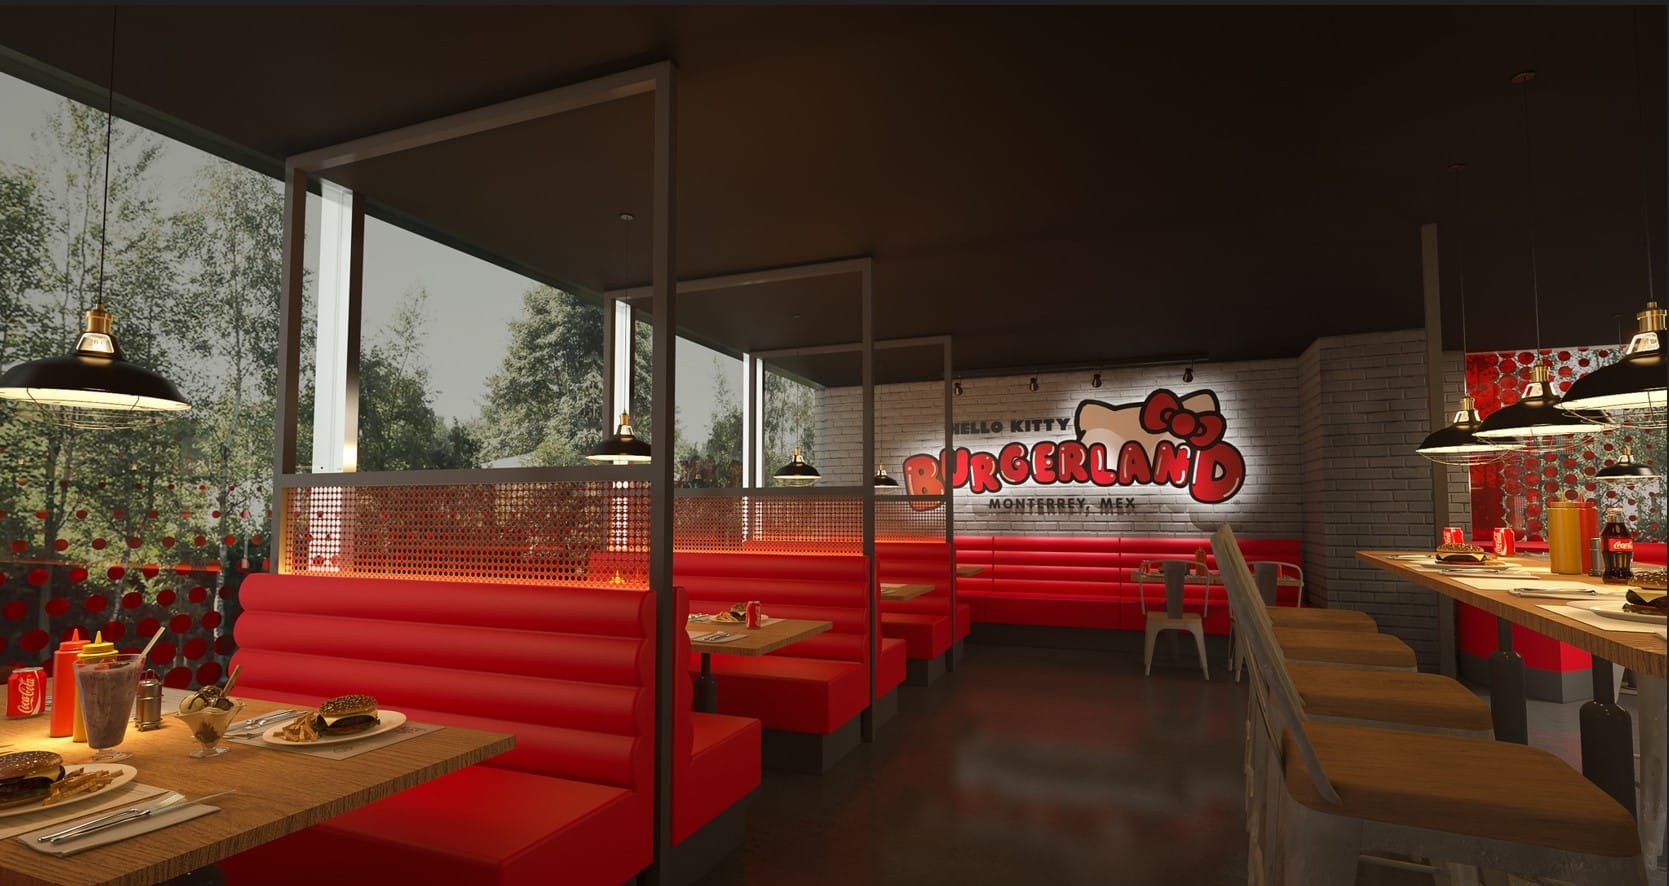 Hello Kitty Burgerland será tu nuevo lugar favorito en Monterrey